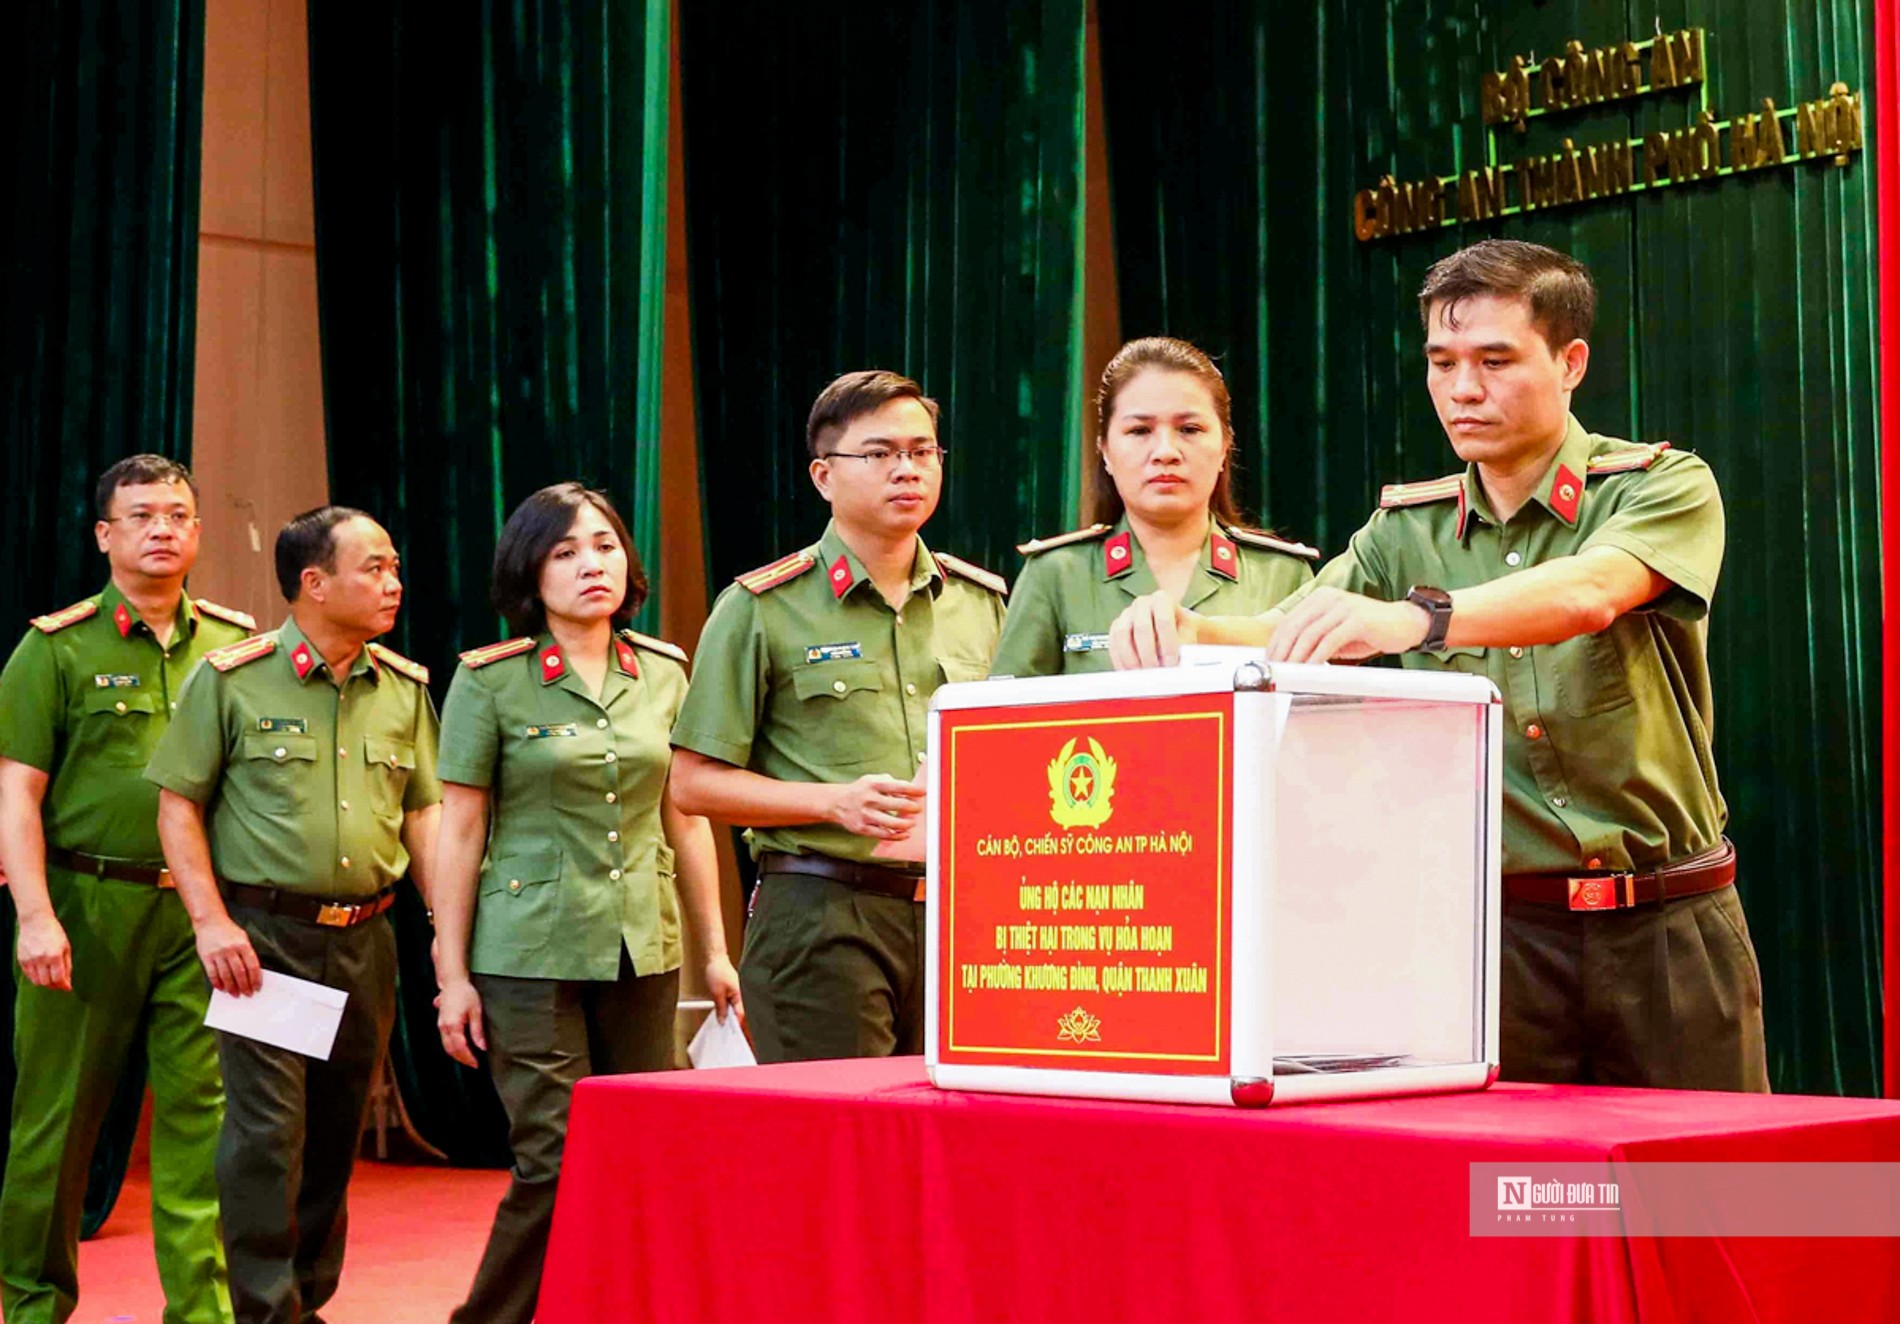 Dân sinh - Công an Hà Nội ủng hộ nạn nhân vụ cháy chung cư mini 500 triệu đồng (Hình 6).